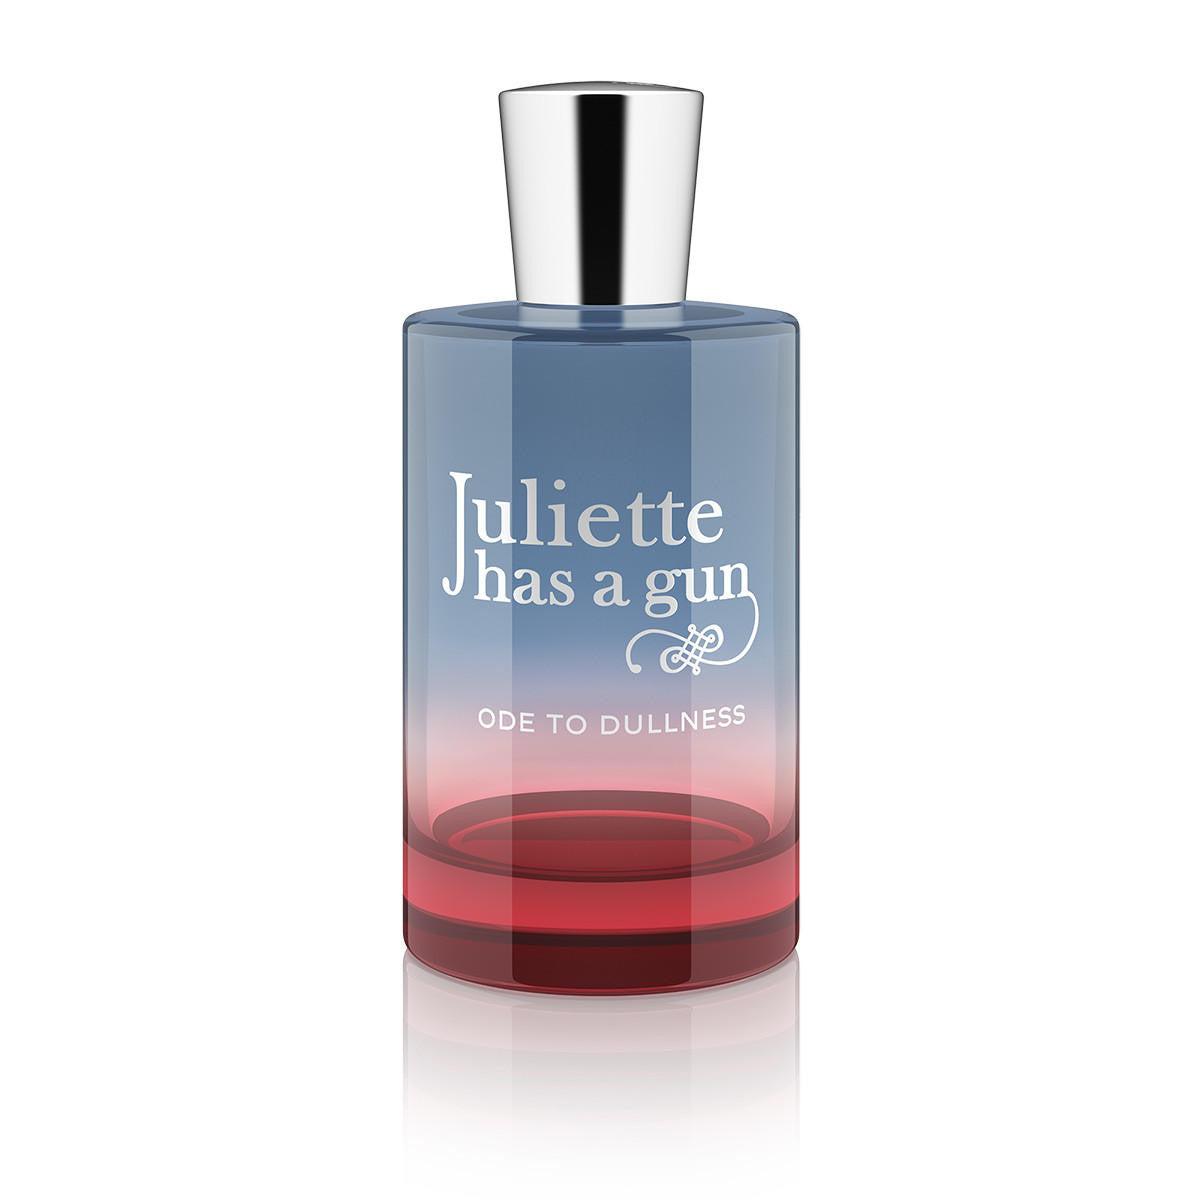  Juliette Ode To Dullness Eau de Parfum 